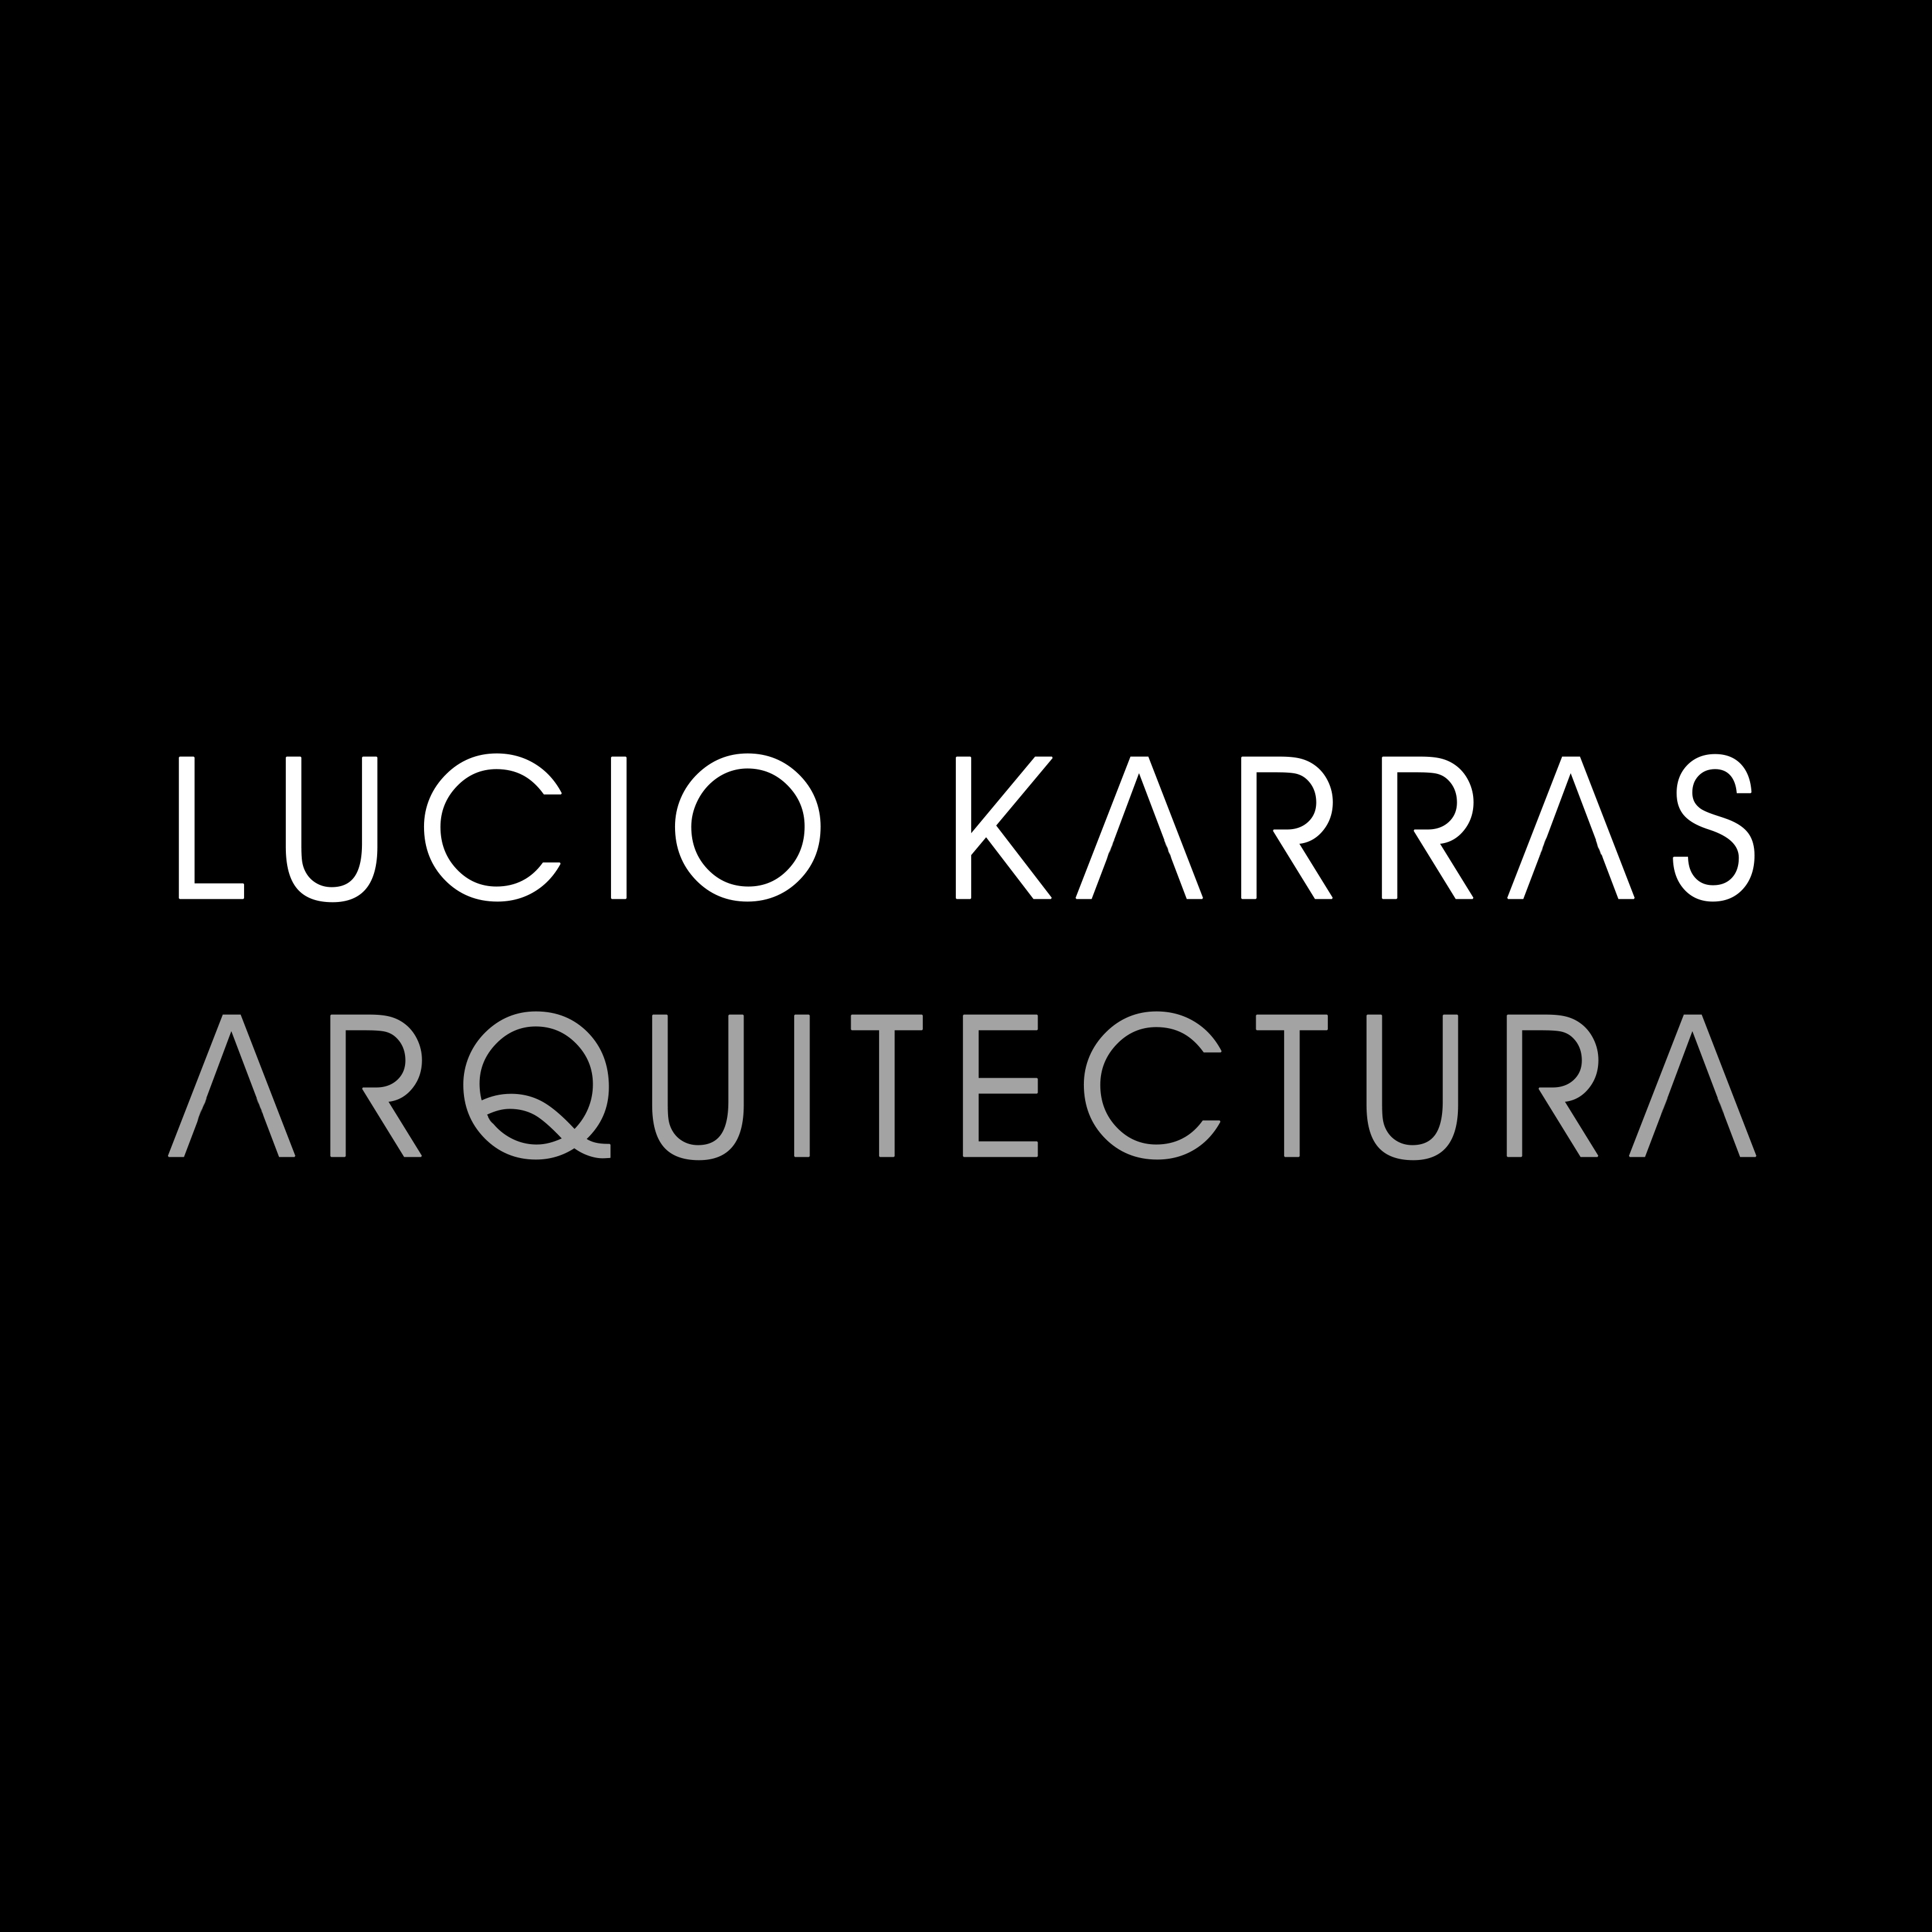 Lucio Karras Arquitectura